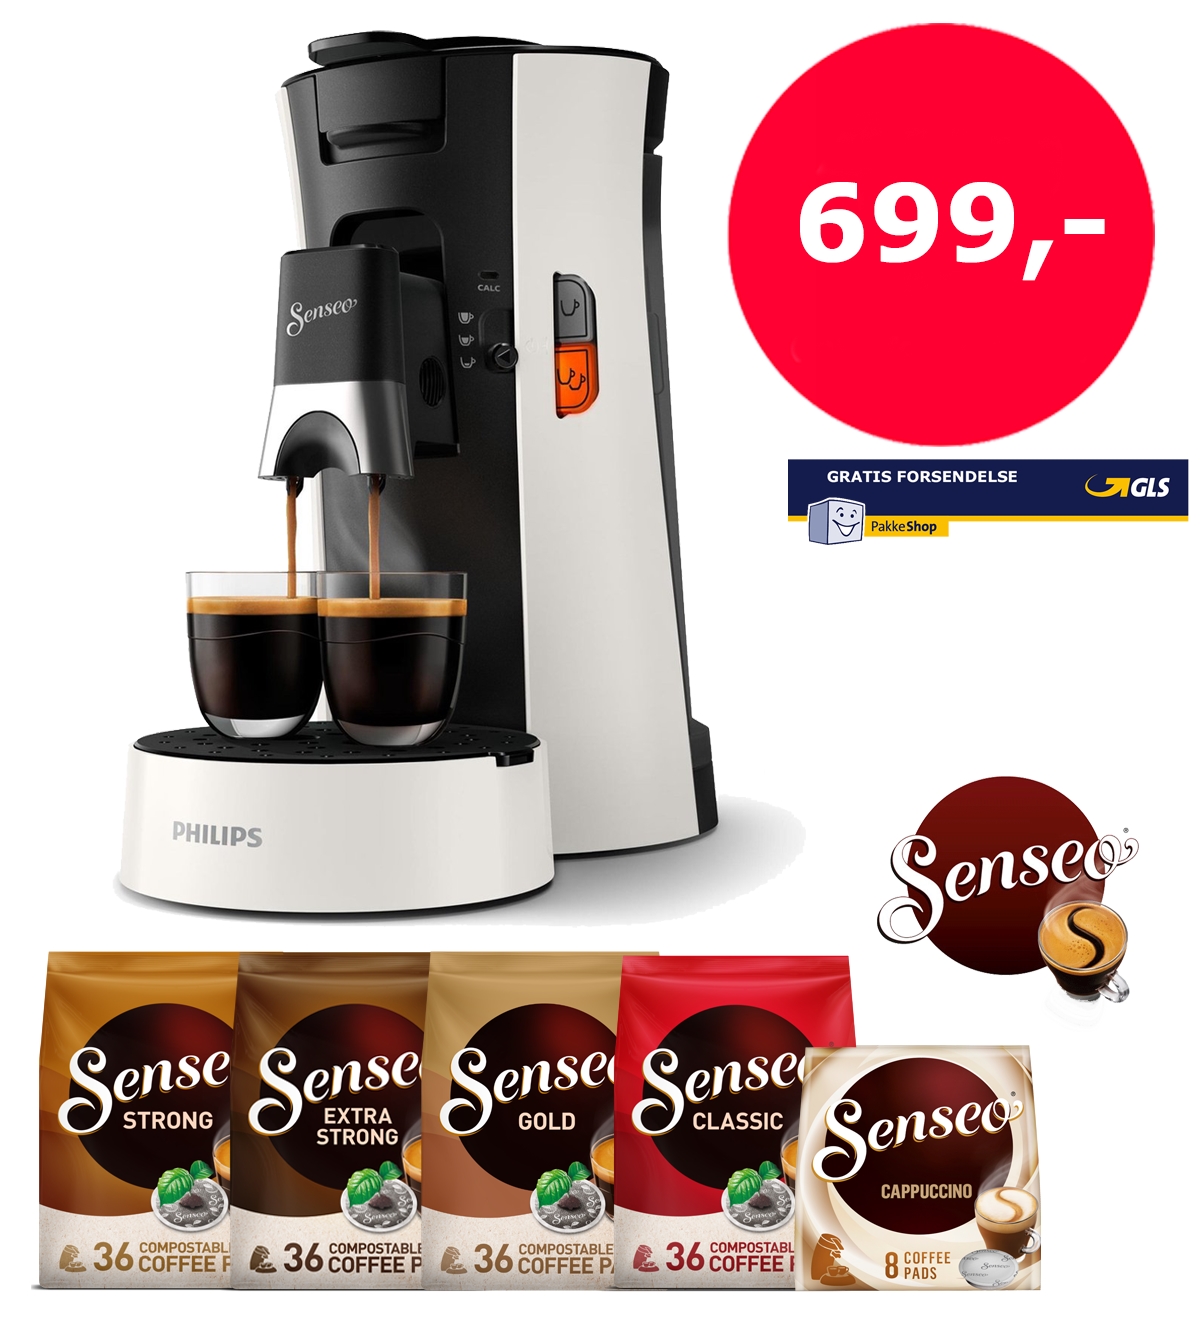 Senseo Select Hvid - Kaffekompagniet.com